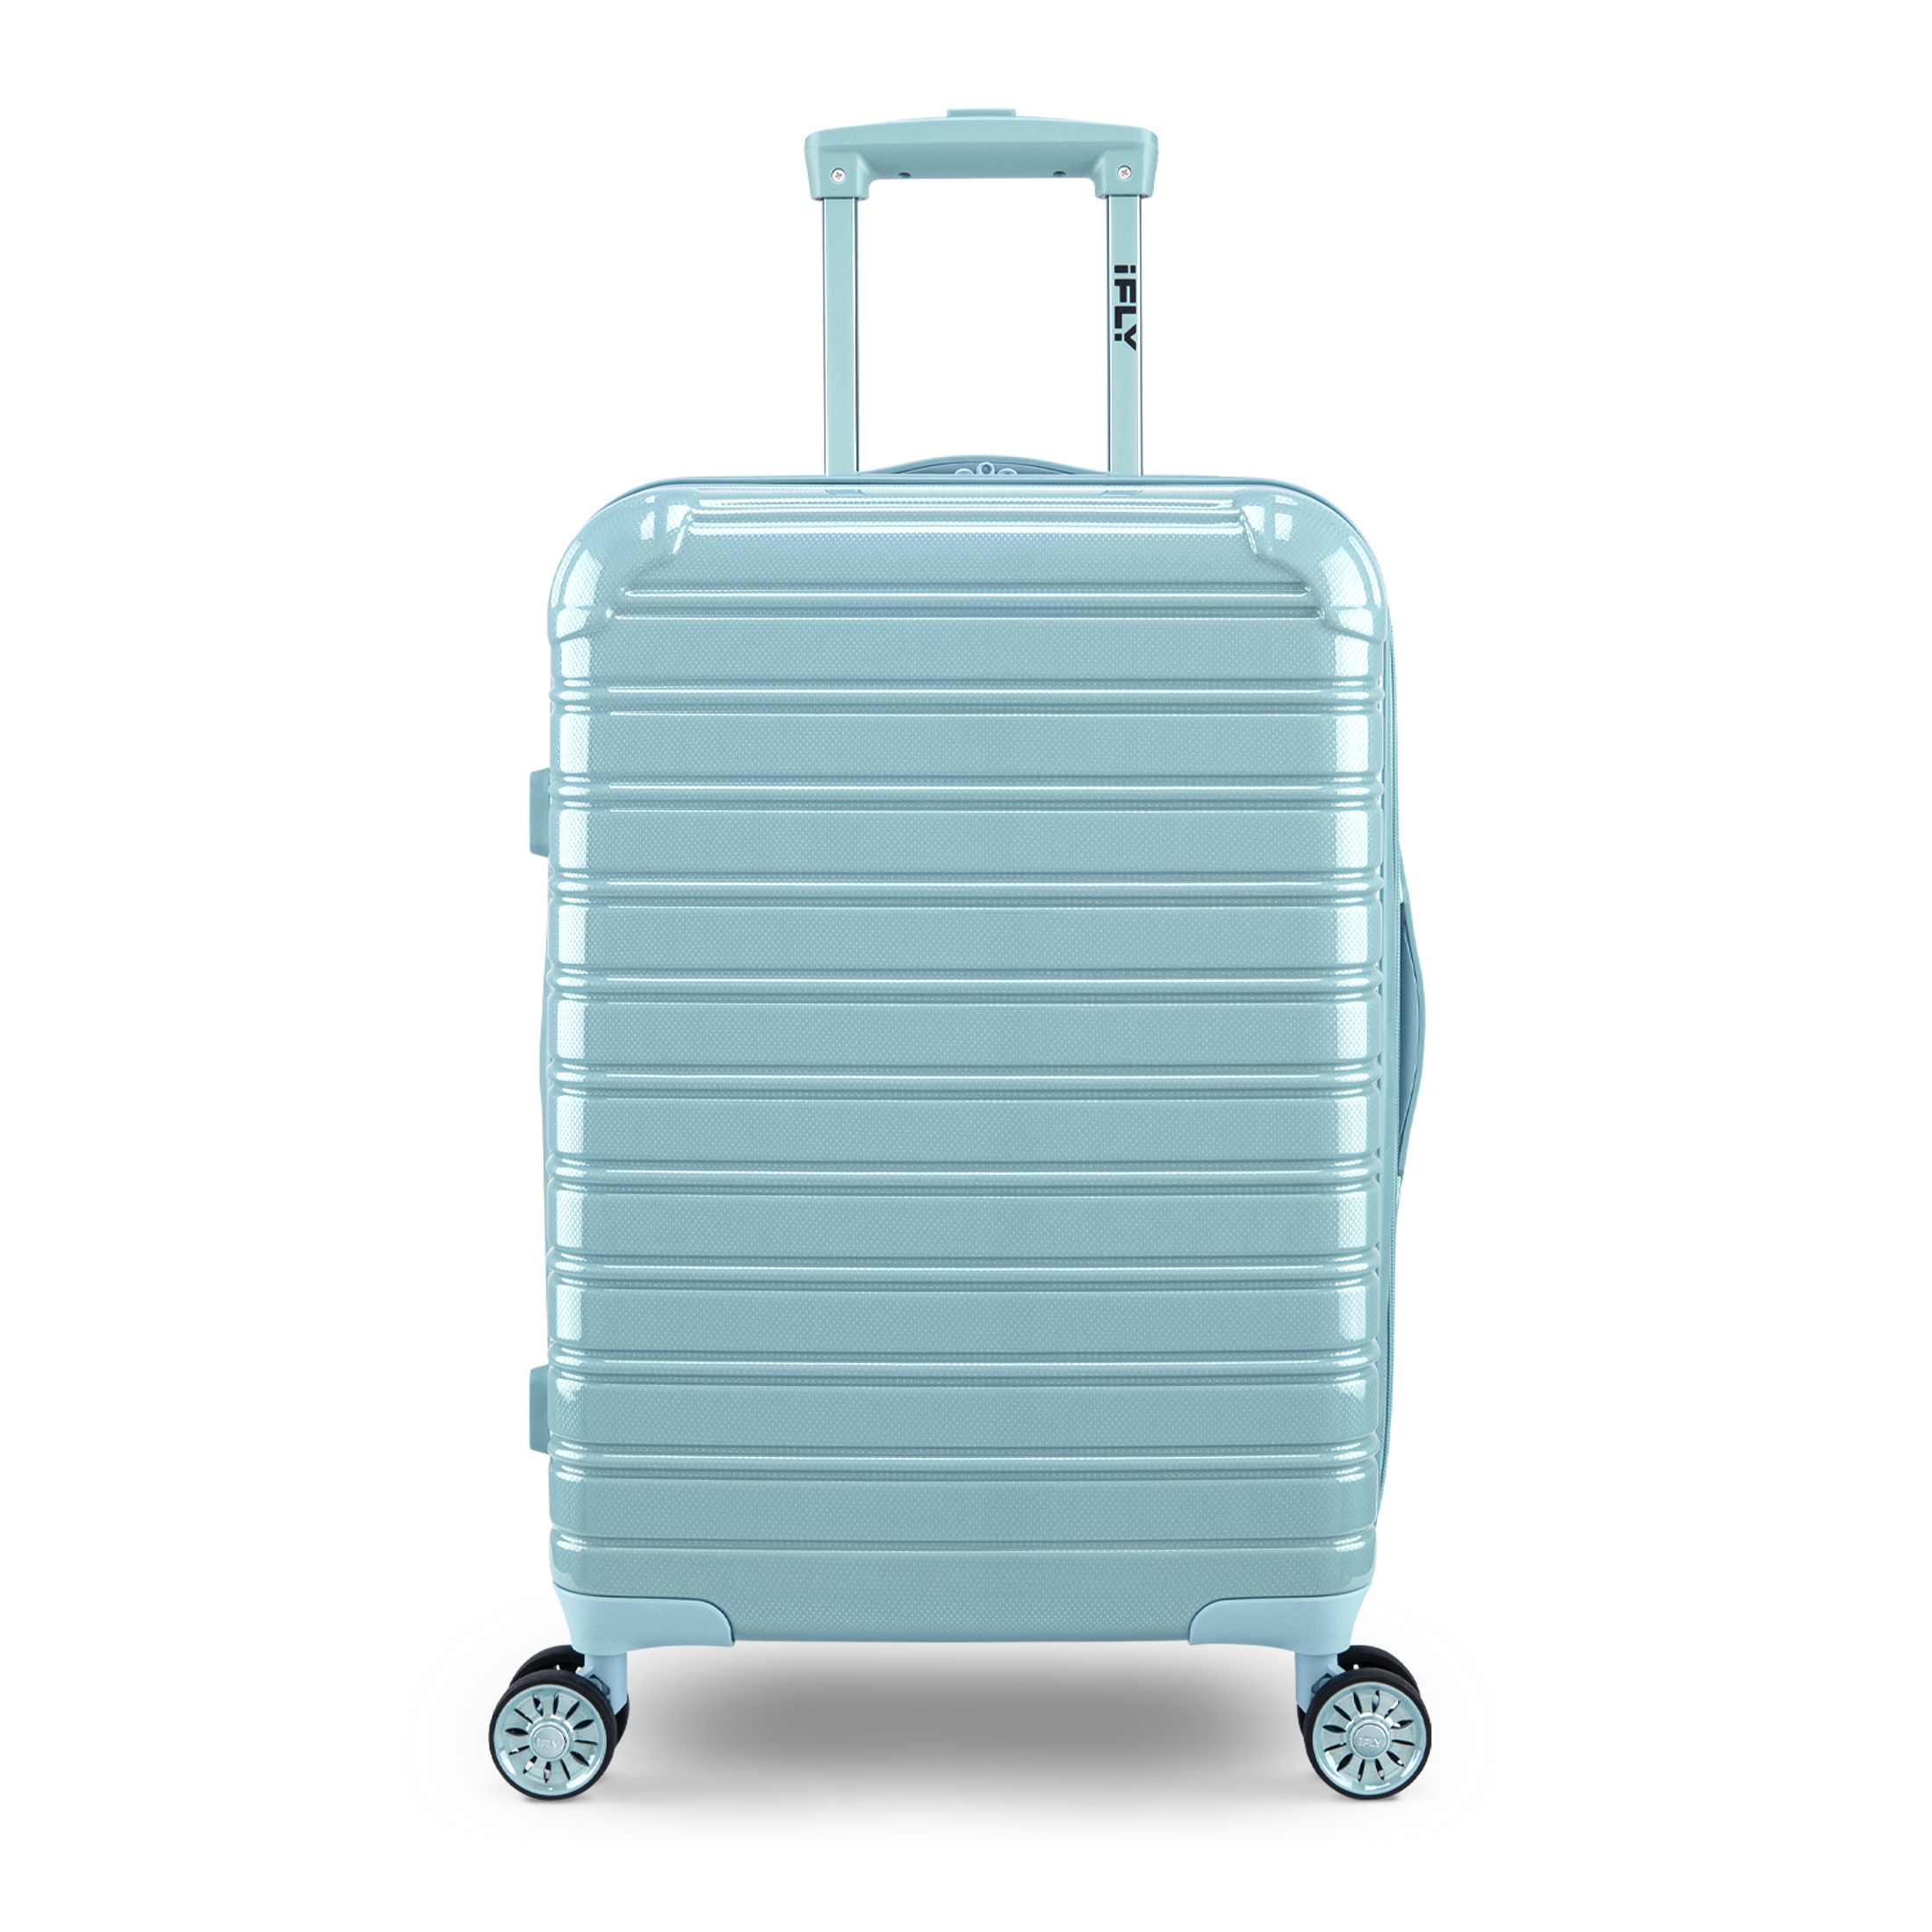 iFLY Hardside Luggage Fibertech 20", Sky - image 1 of 9